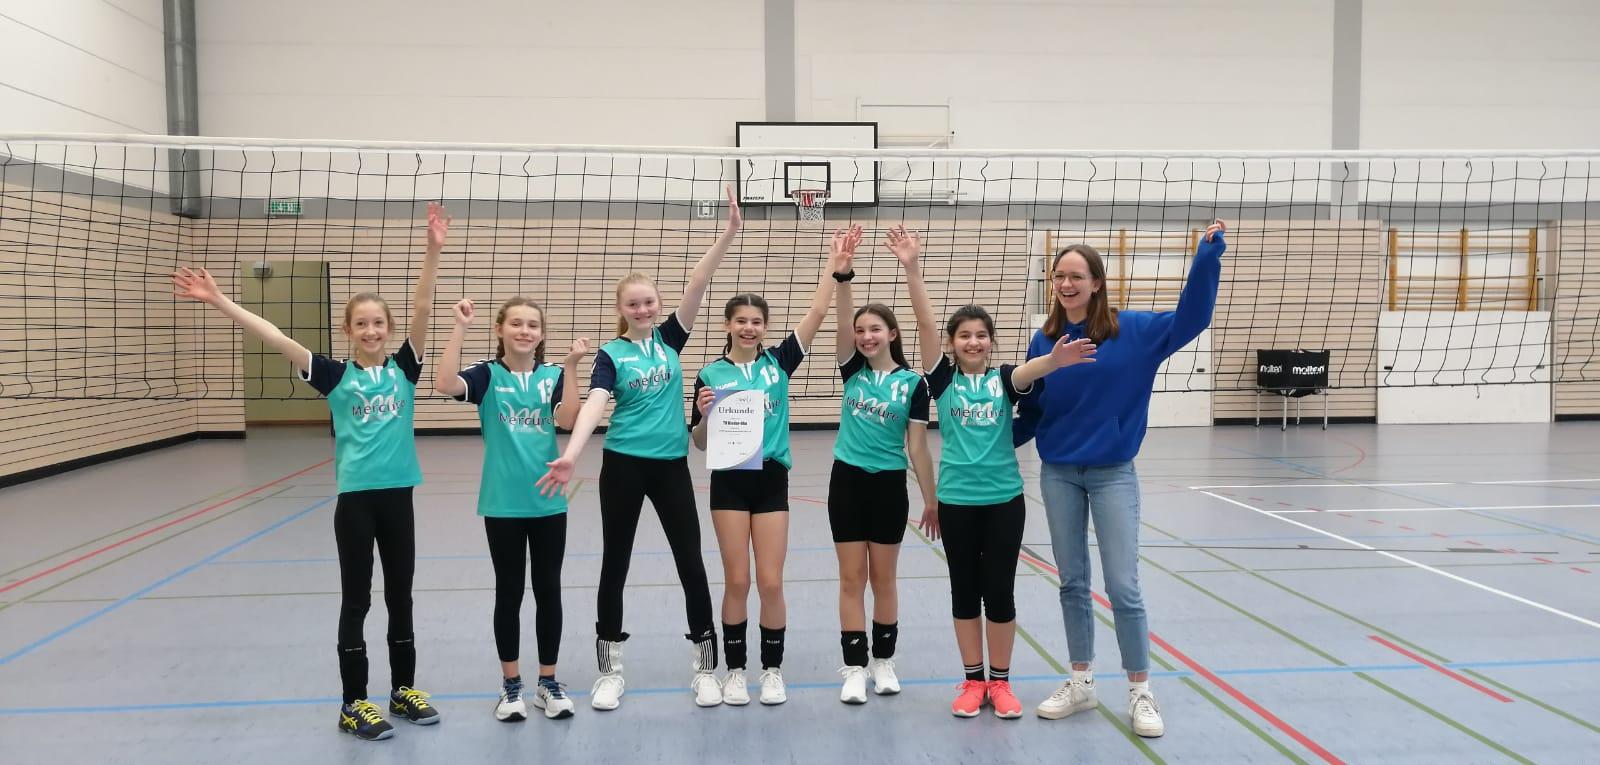 U14-Mädels wurden Vierte bei der Rheinland-Pfalz-Meisterschaft!